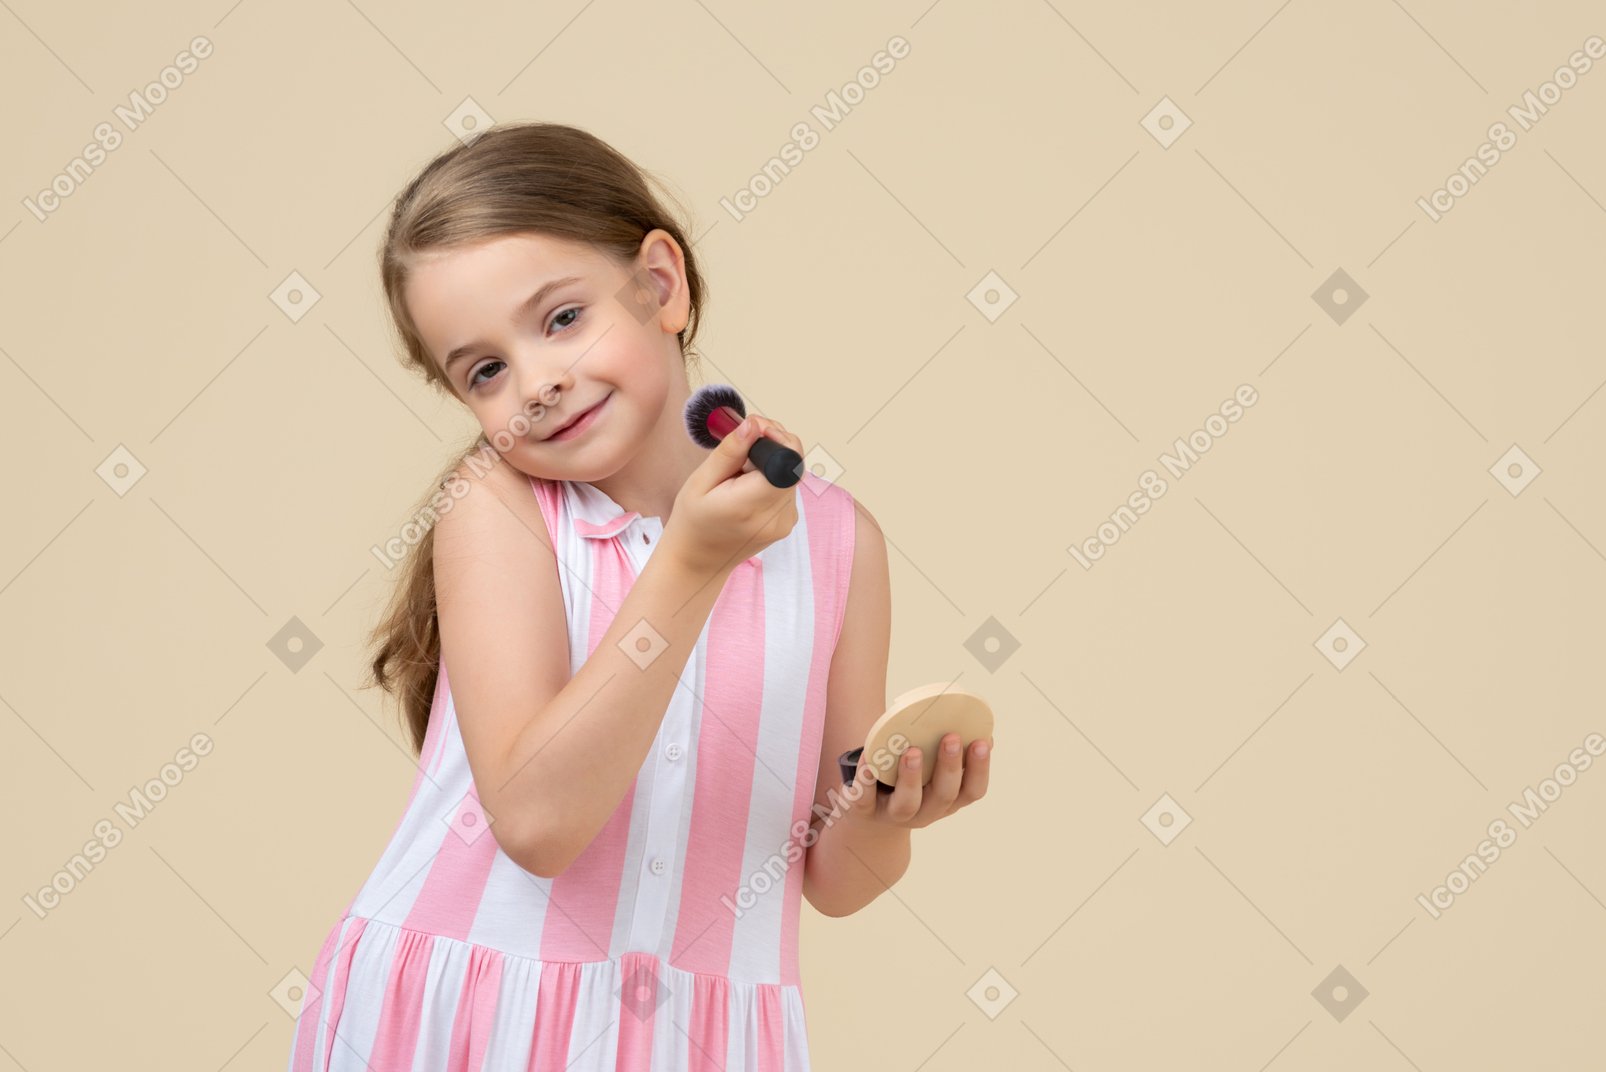 Cute little girl applying makeup